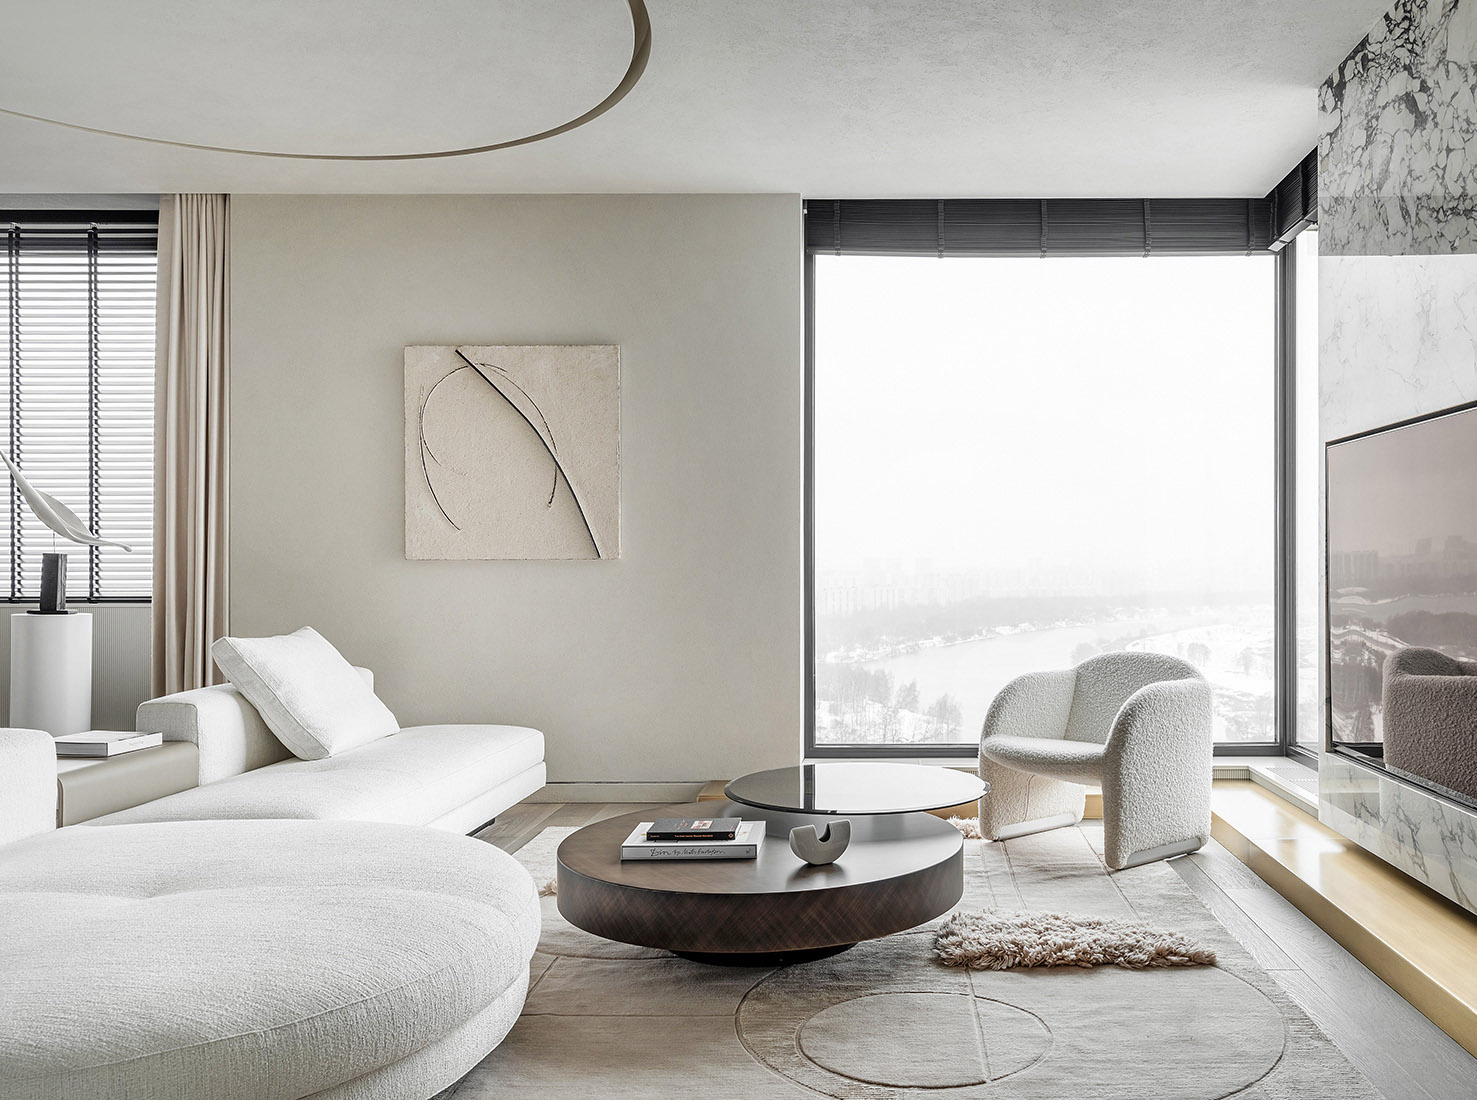 Quadro Room,大平層設計,190㎡,莫斯科,大平層裝修,輕奢風格,大平層設計案例,Quadro Room設計案例,Quadro Room作品